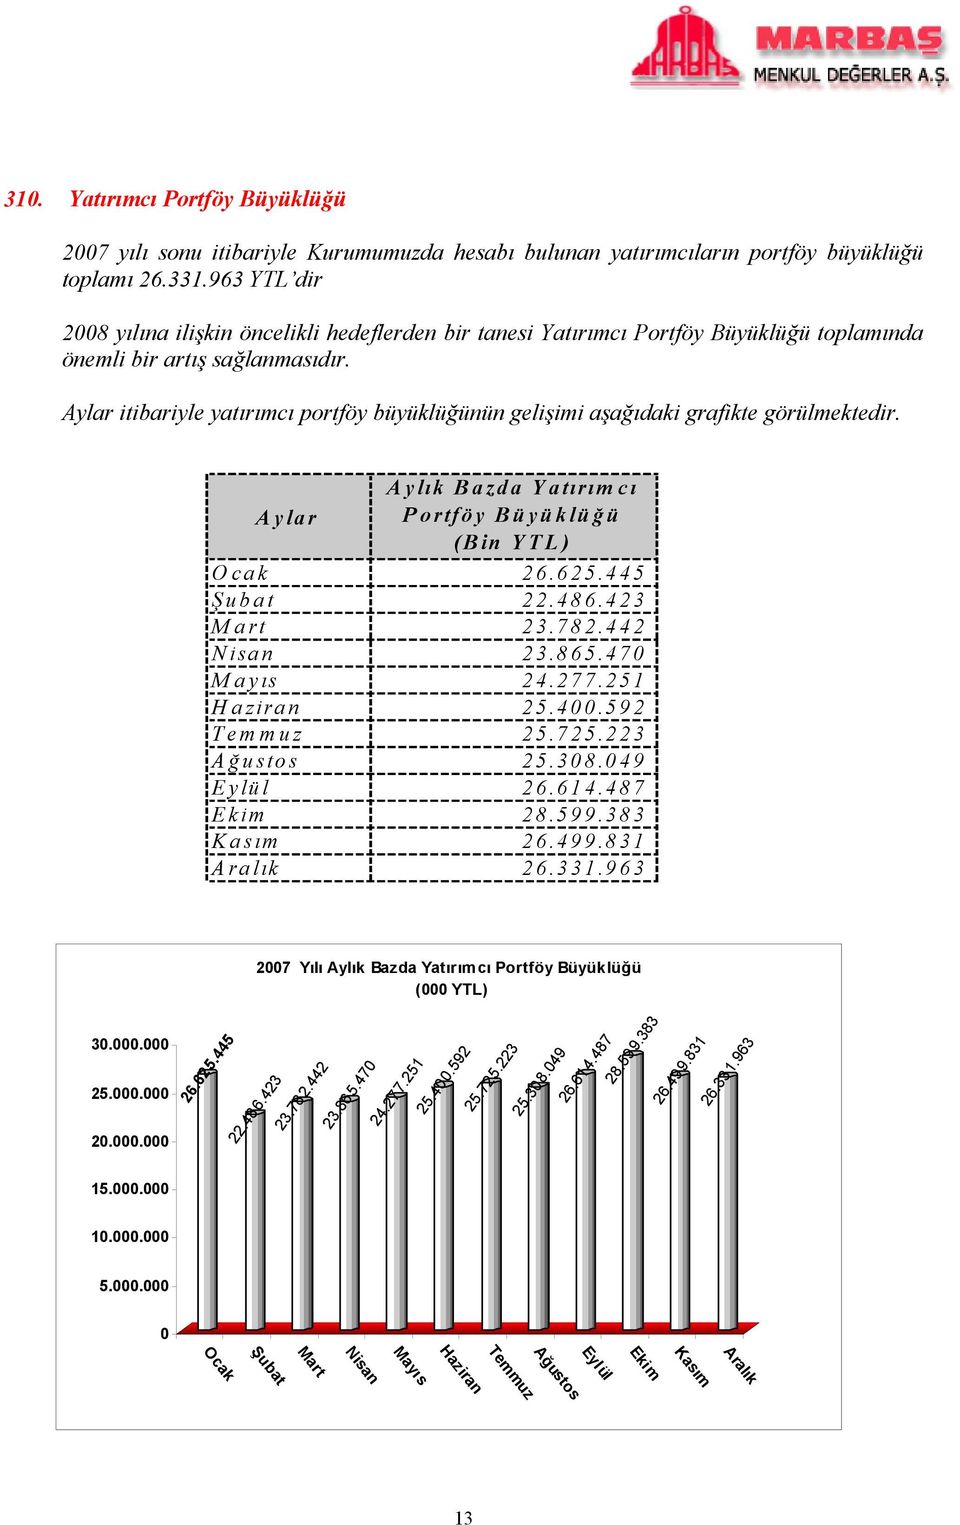 Aylar itibariyle yatırımcı portföy büyüklüğünün gelişimi aşağıdaki grafikte görülmektedir. Aylık Bazda Yatırımcı Aylar Portföy Büyüklüğ ü (Bin YTL) Ocak 26.625.445 Ş ubat 22.486.423 Mart 23.782.